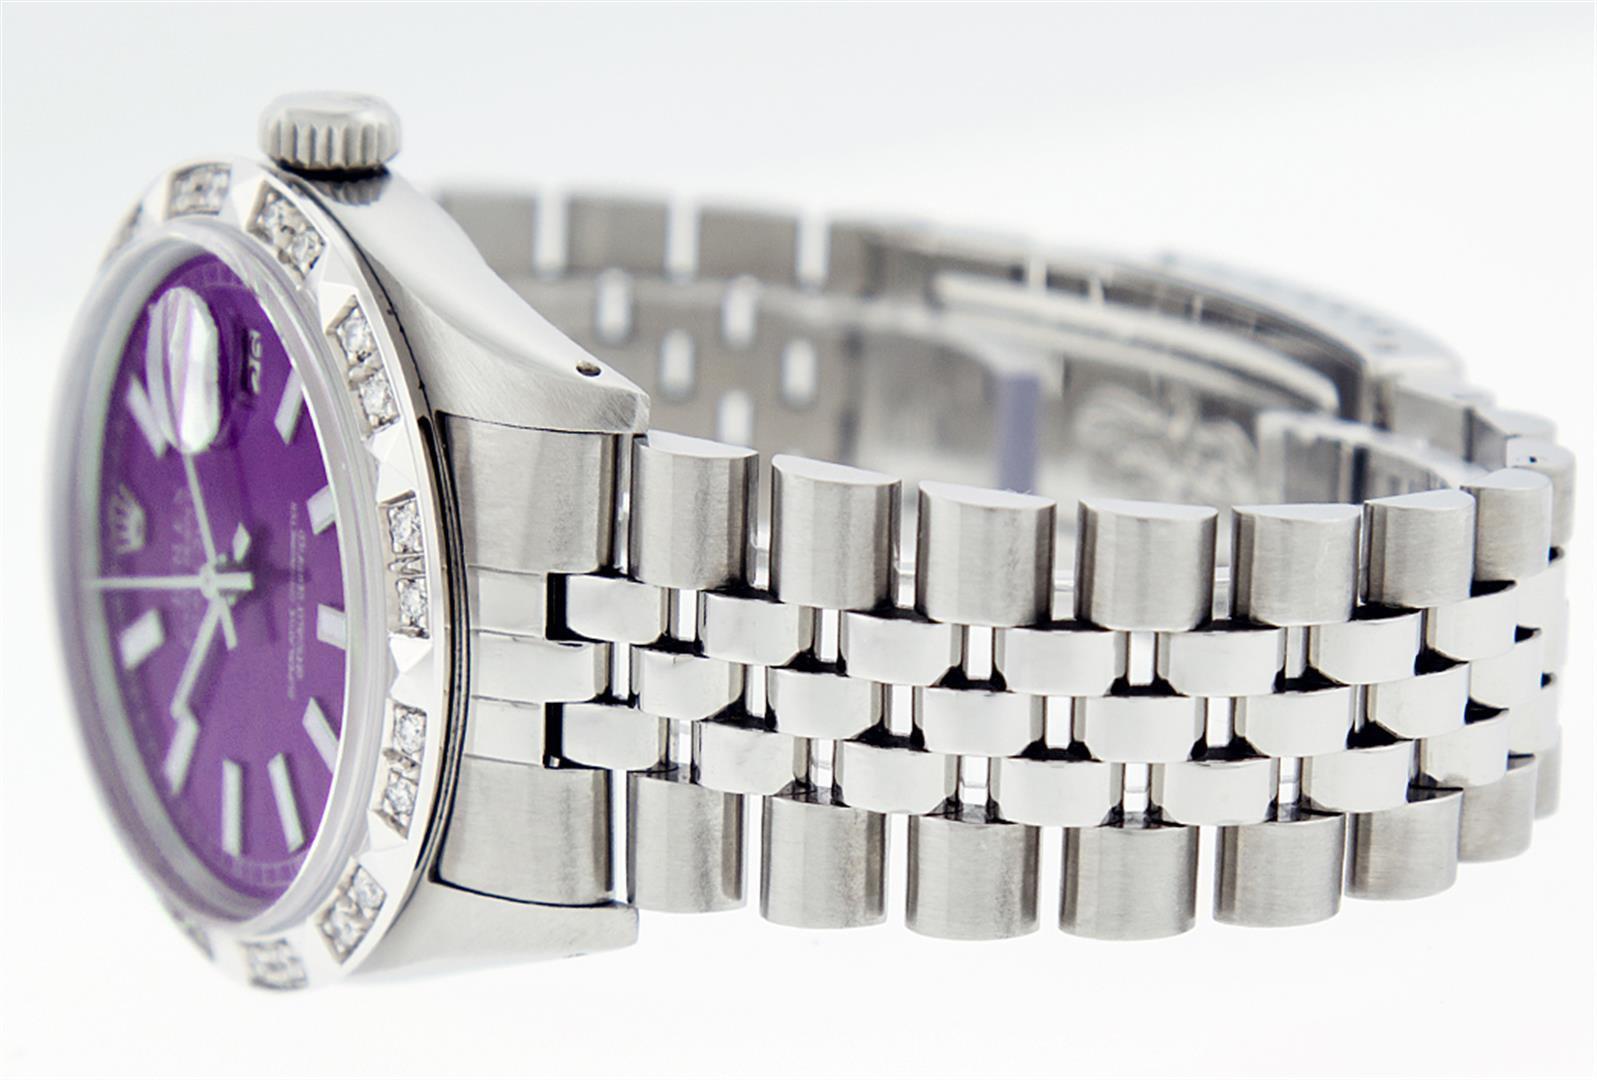 Rolex Stainless Steel Purple Index Pyramid Diamond DateJust Men's Watch